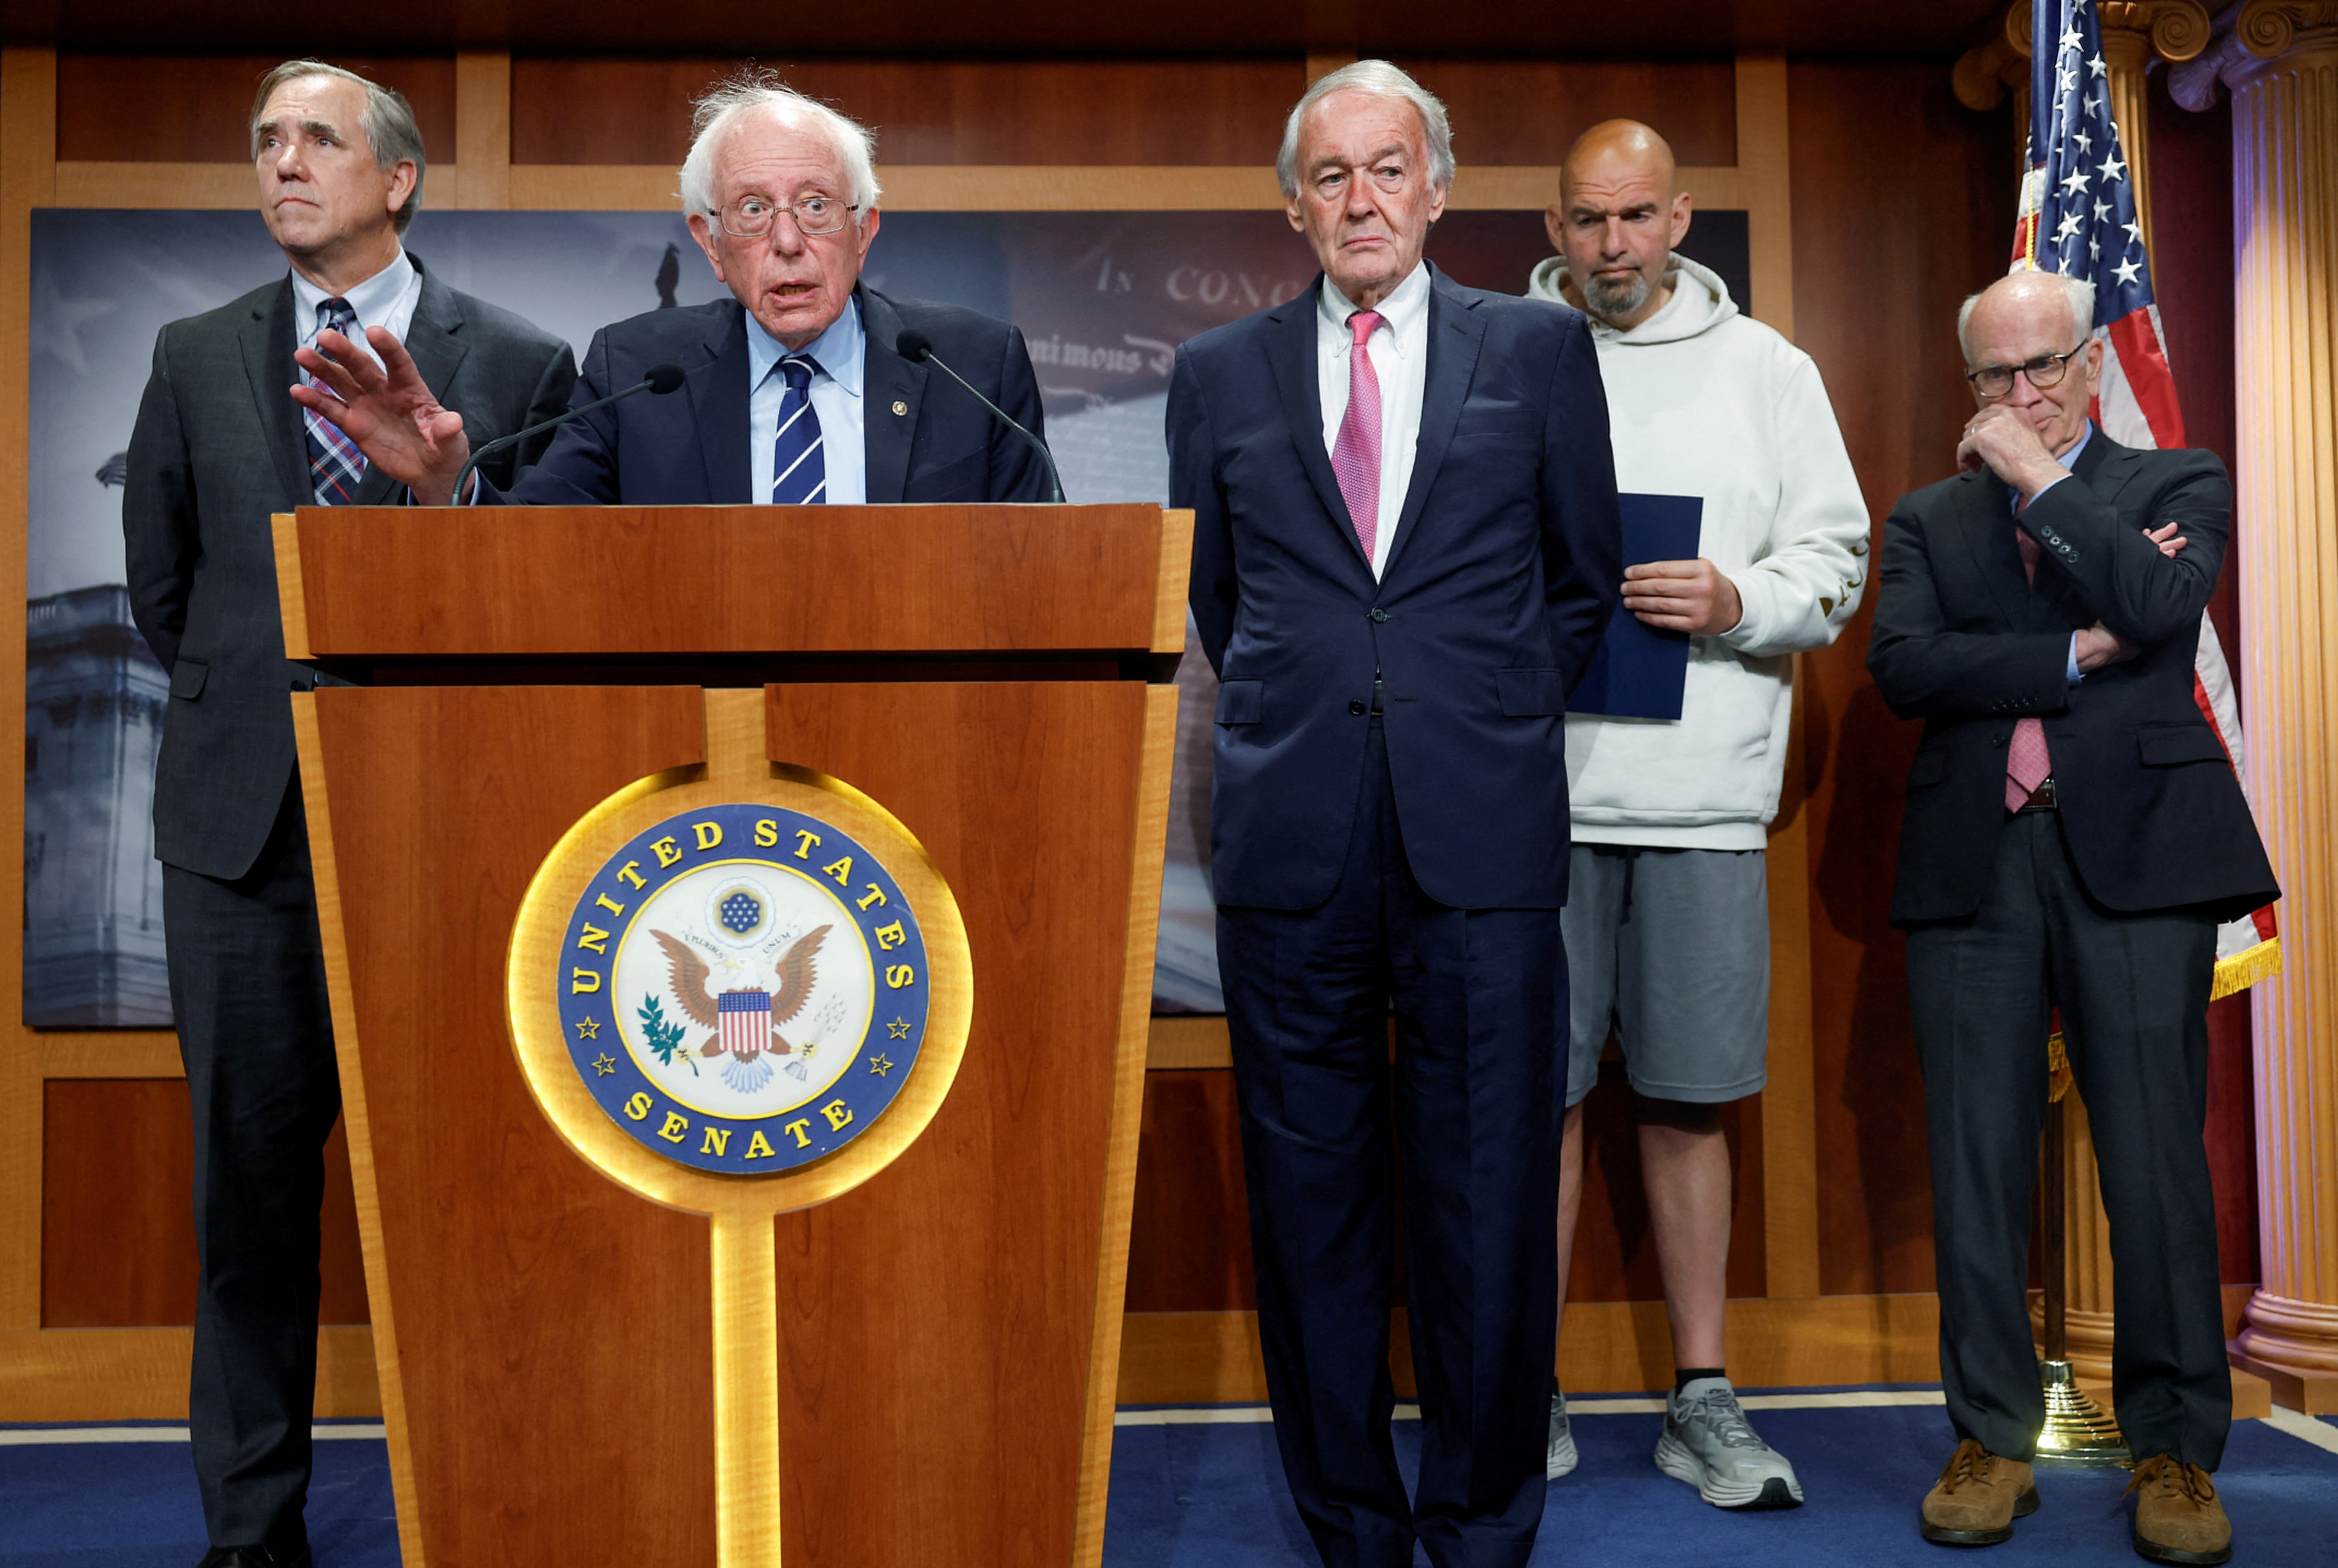 El senador estadounidense Bernie Sanders, junto con los senadores Jeff Merkley, Edward Markey, John Fetterman y Peter Welch, habla en una rueda de prensa en el Capitolio  (REUTERS/Evelyn Hockstein)